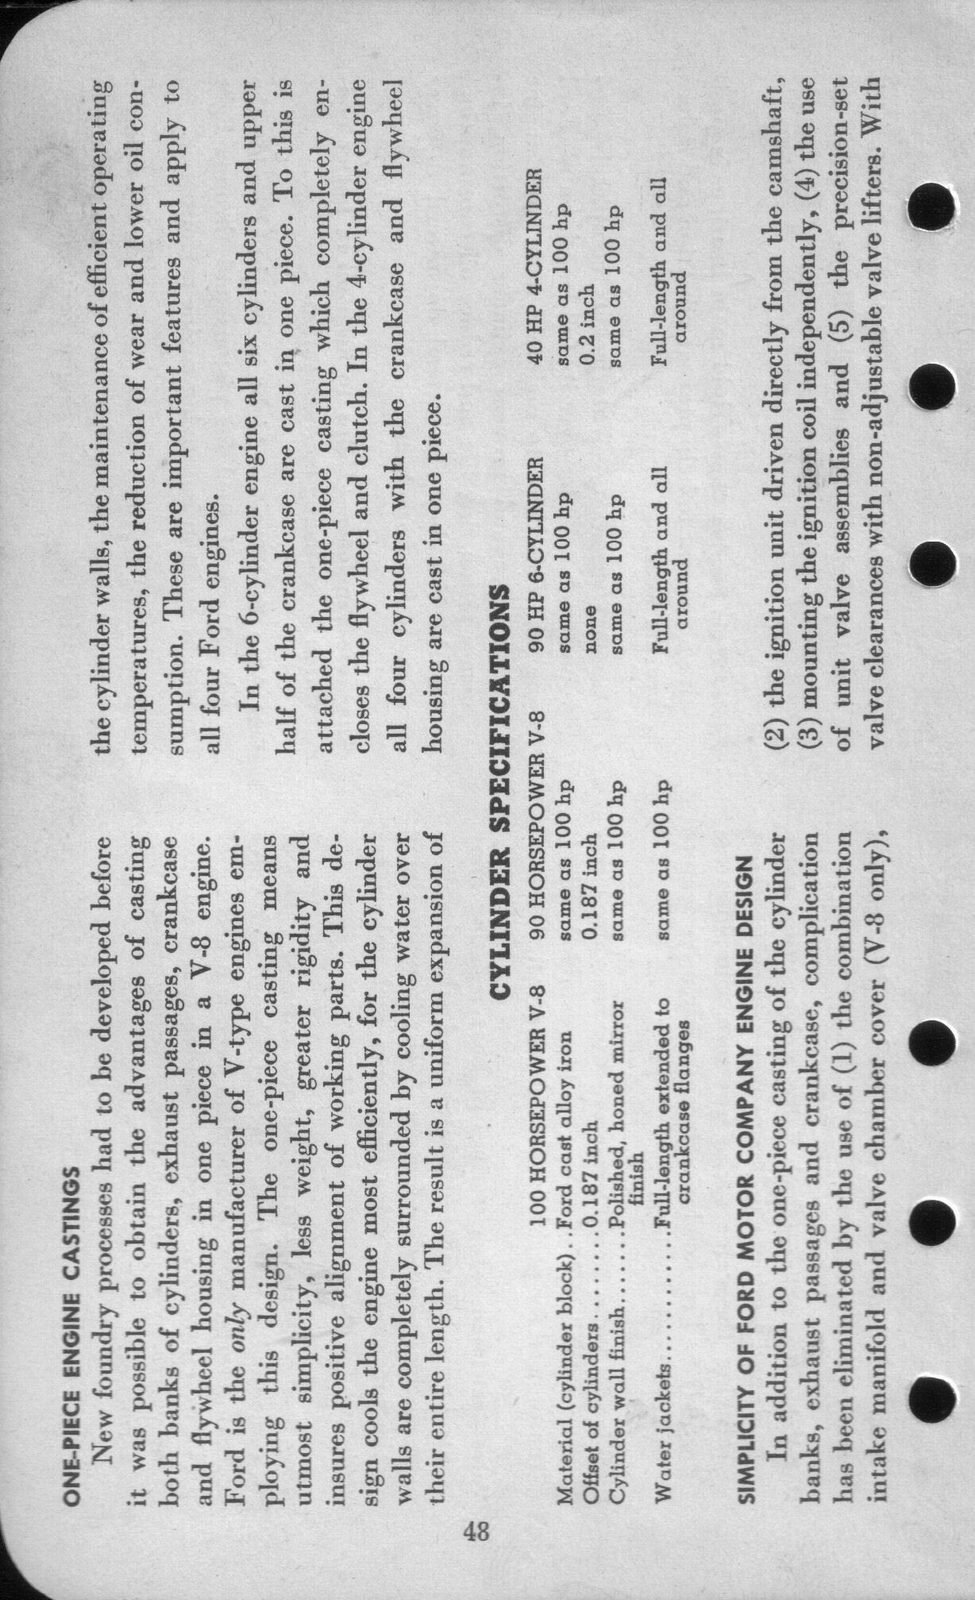 n_1942 Ford Salesmans Reference Manual-048.jpg